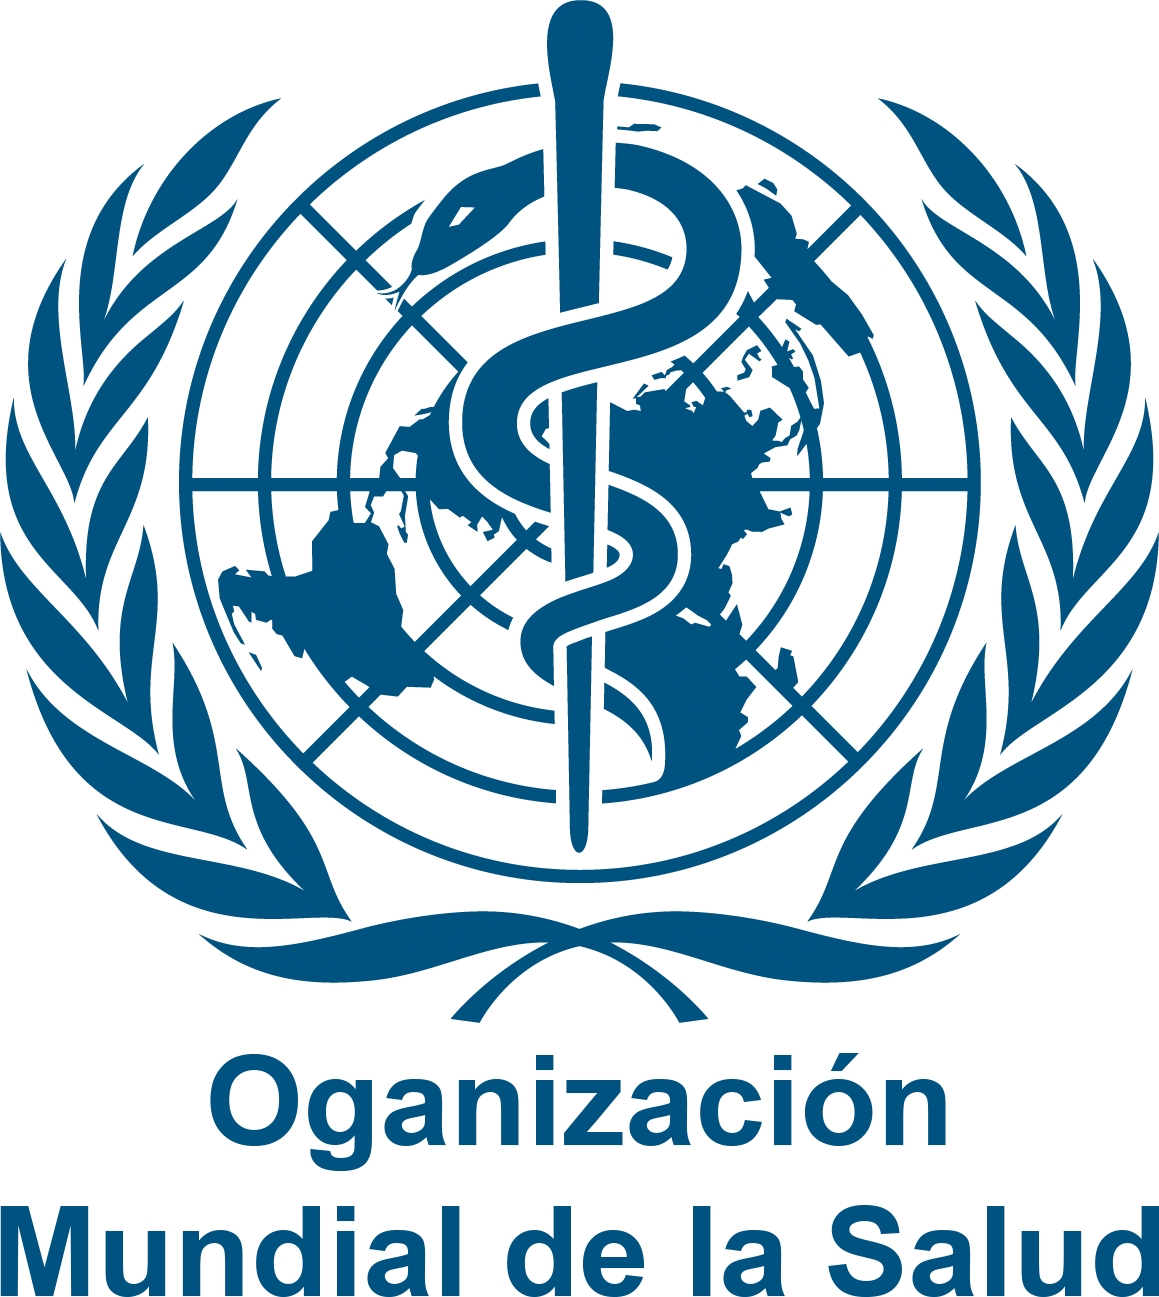 Organizacion mundial de la salud